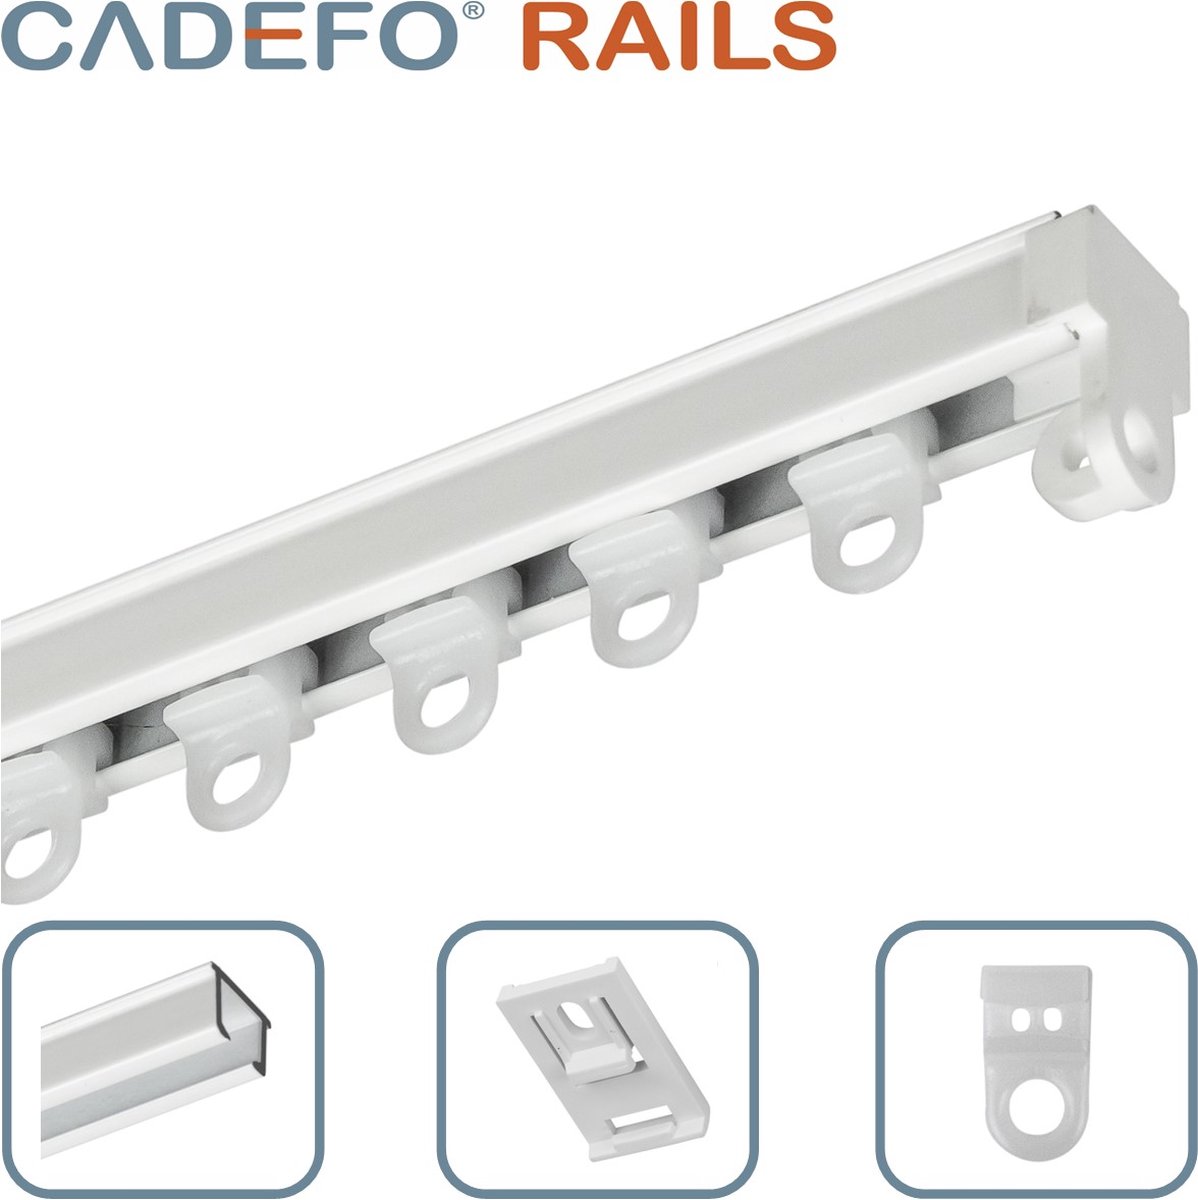 CADEFO RAILS (101 - 150 cm) Gordijnrails - Compleet op maat! - UIT 1 STUK - Leverbaar tot 6 meter - Plafondbevestiging - Lengte 133 cm